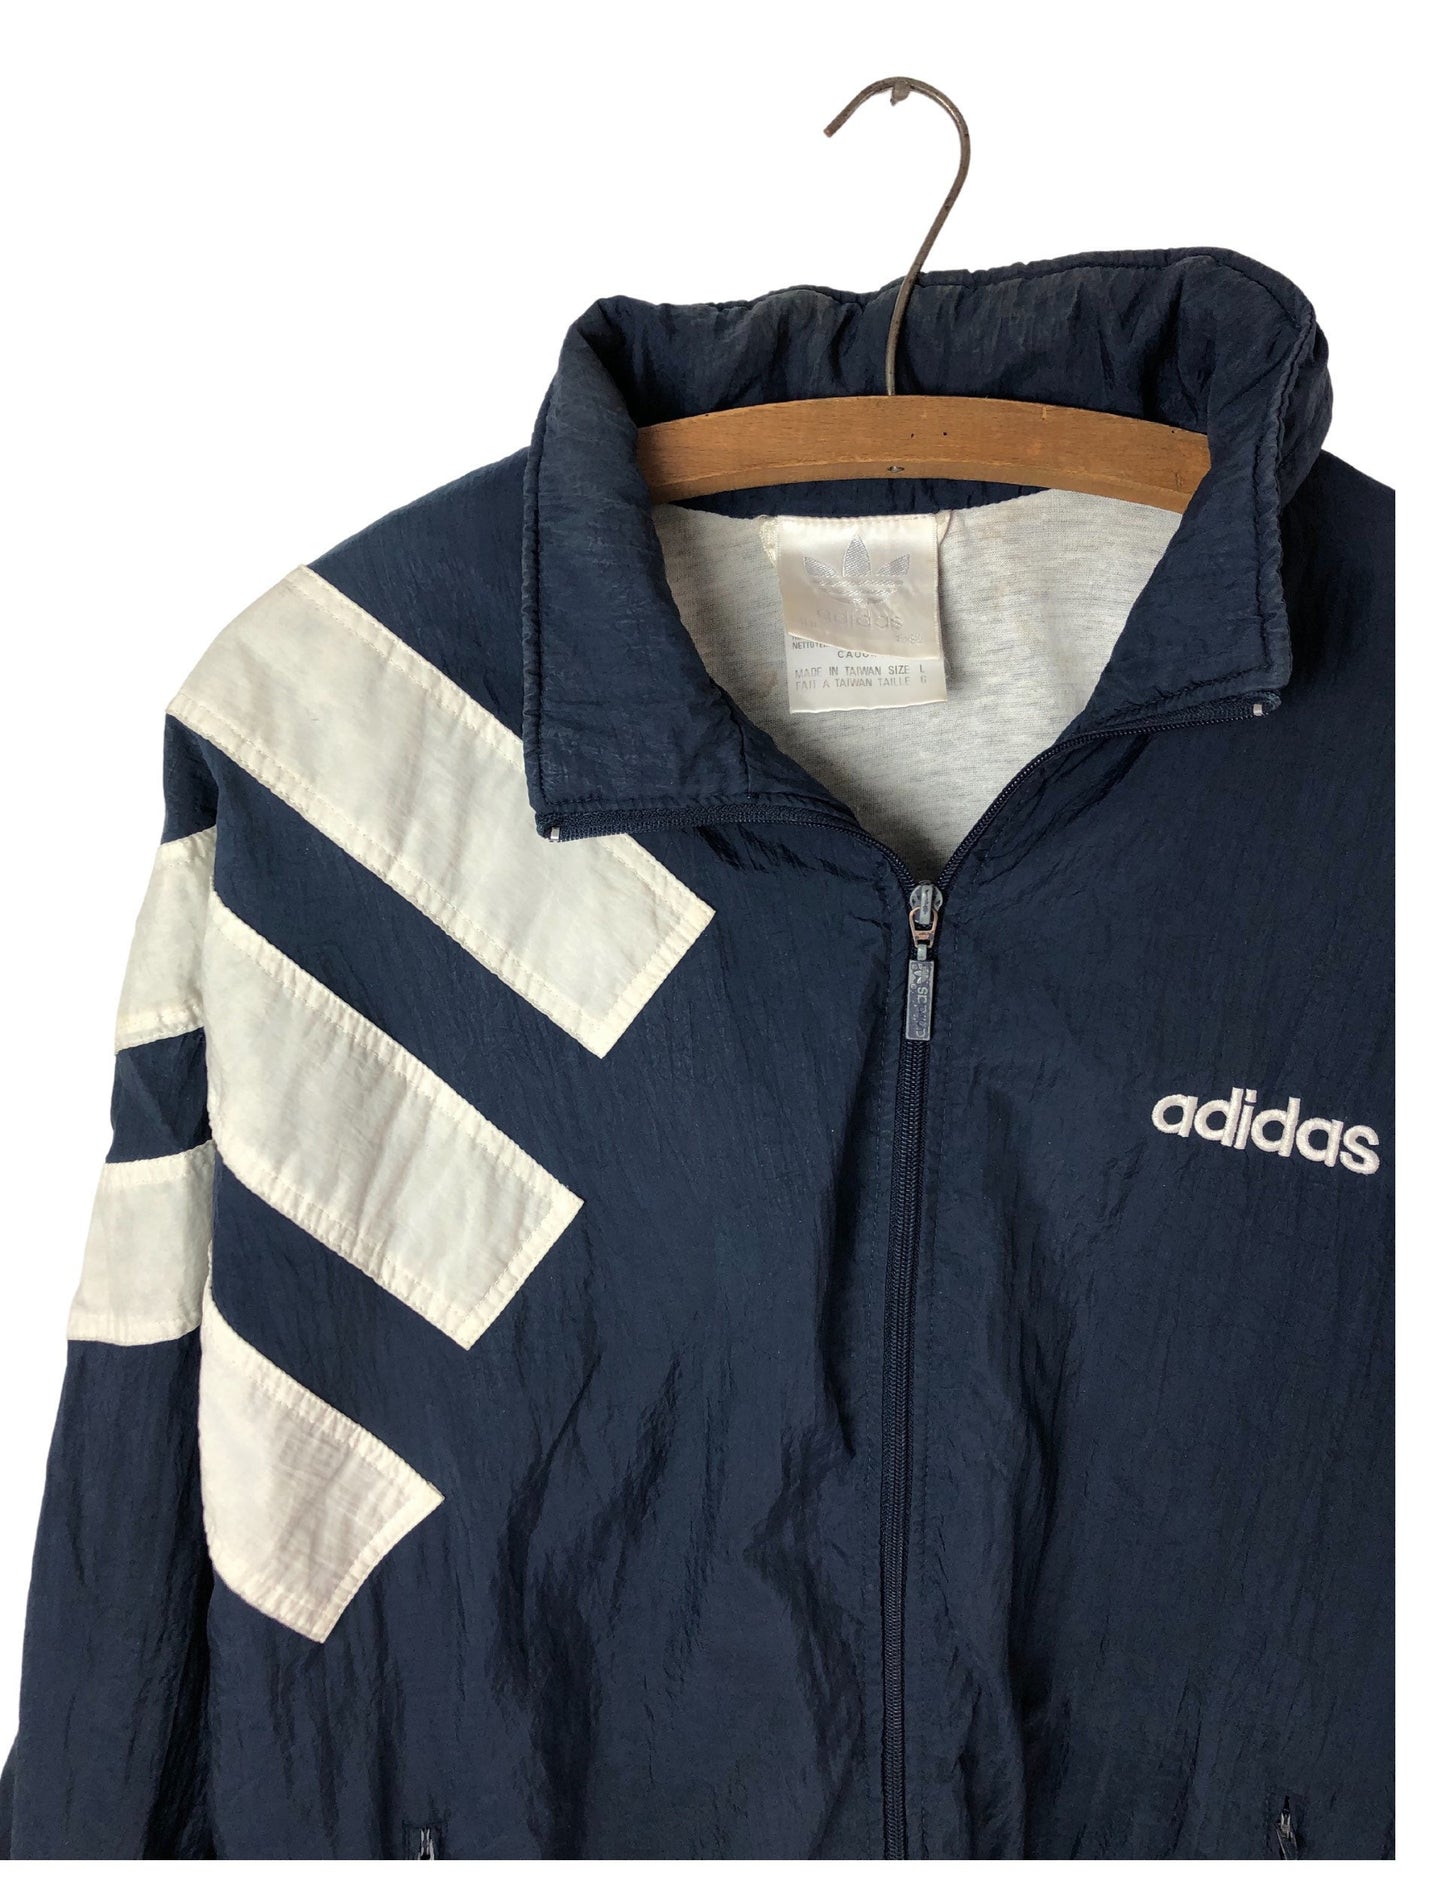 90's ADIDAS Logo Trefoil Athletic Zip Up 100% Nylon Hooded Windbreaker Jacket Size Large